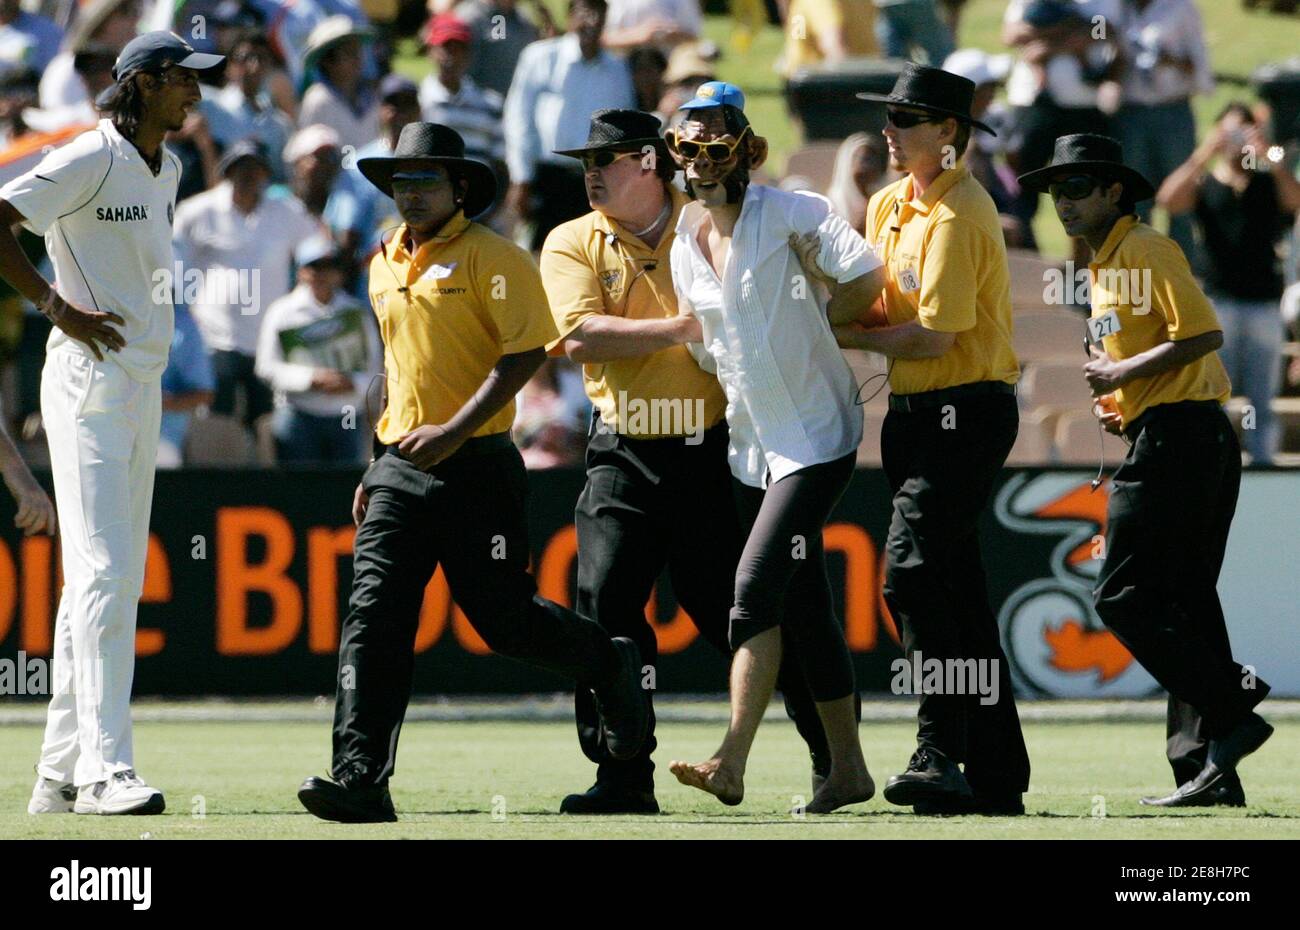 Indiens Ishant Sharma (L) Uhren Sicherheit einen Mann trägt eine Affenmaske abseits des Spielfeldes während des vierten Tages der ihre vierte und letzte Test-Cricket-Spiel gegen Australien in Adelaide Oval 27. Januar 2008 begleiten. REUTERS / Willen Burgess (Australien) Stockfoto